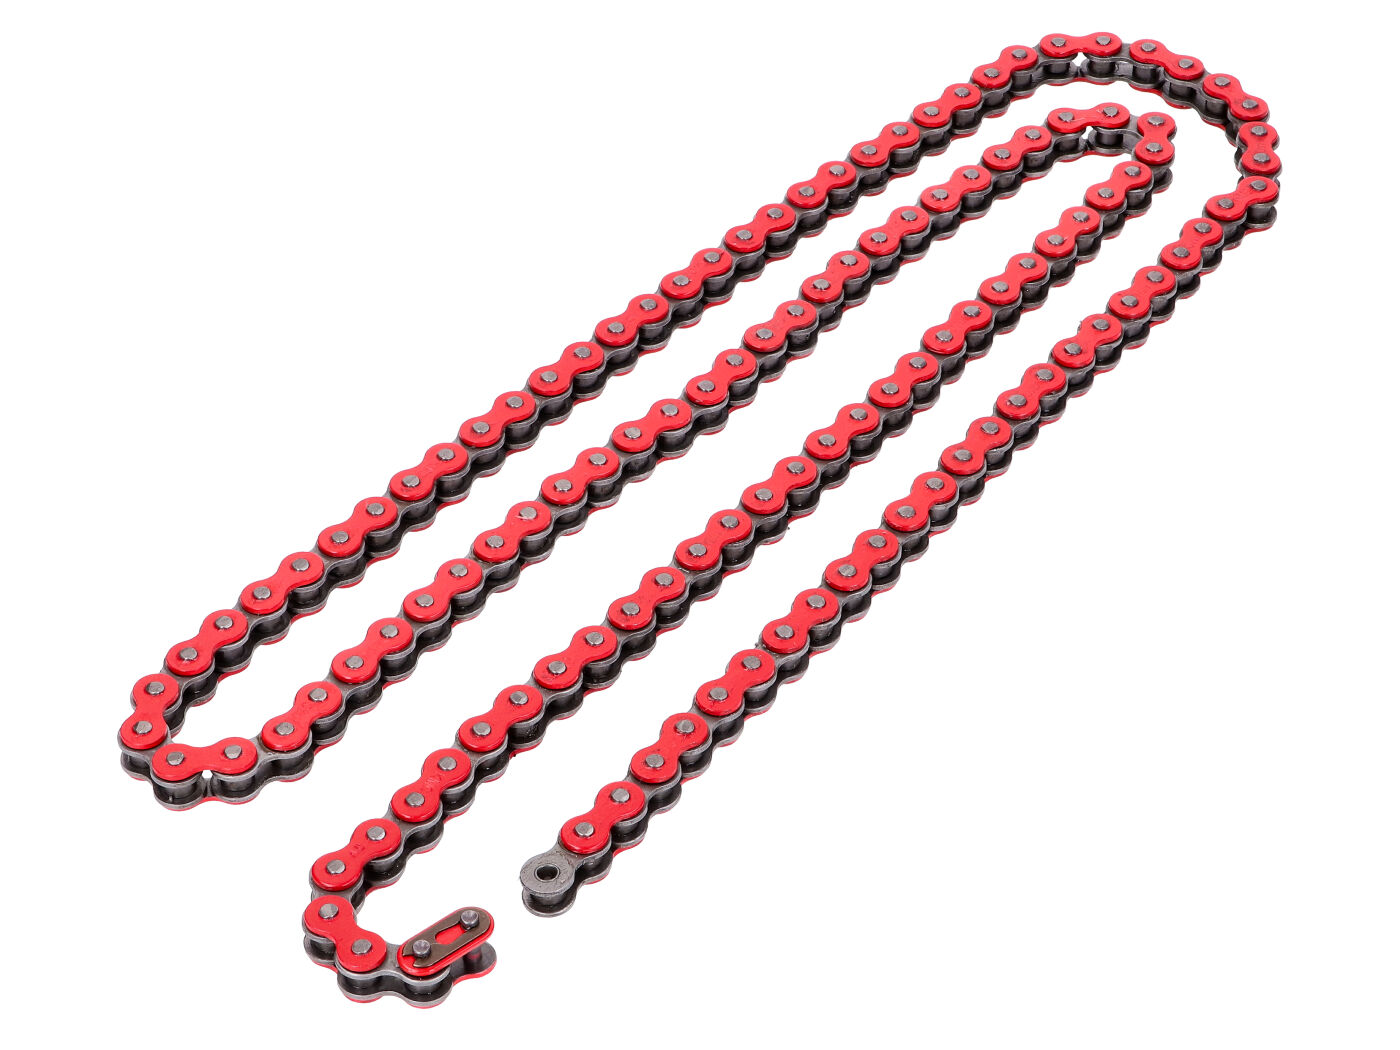 Řetěz KMC zesílený červený - 415 x 120